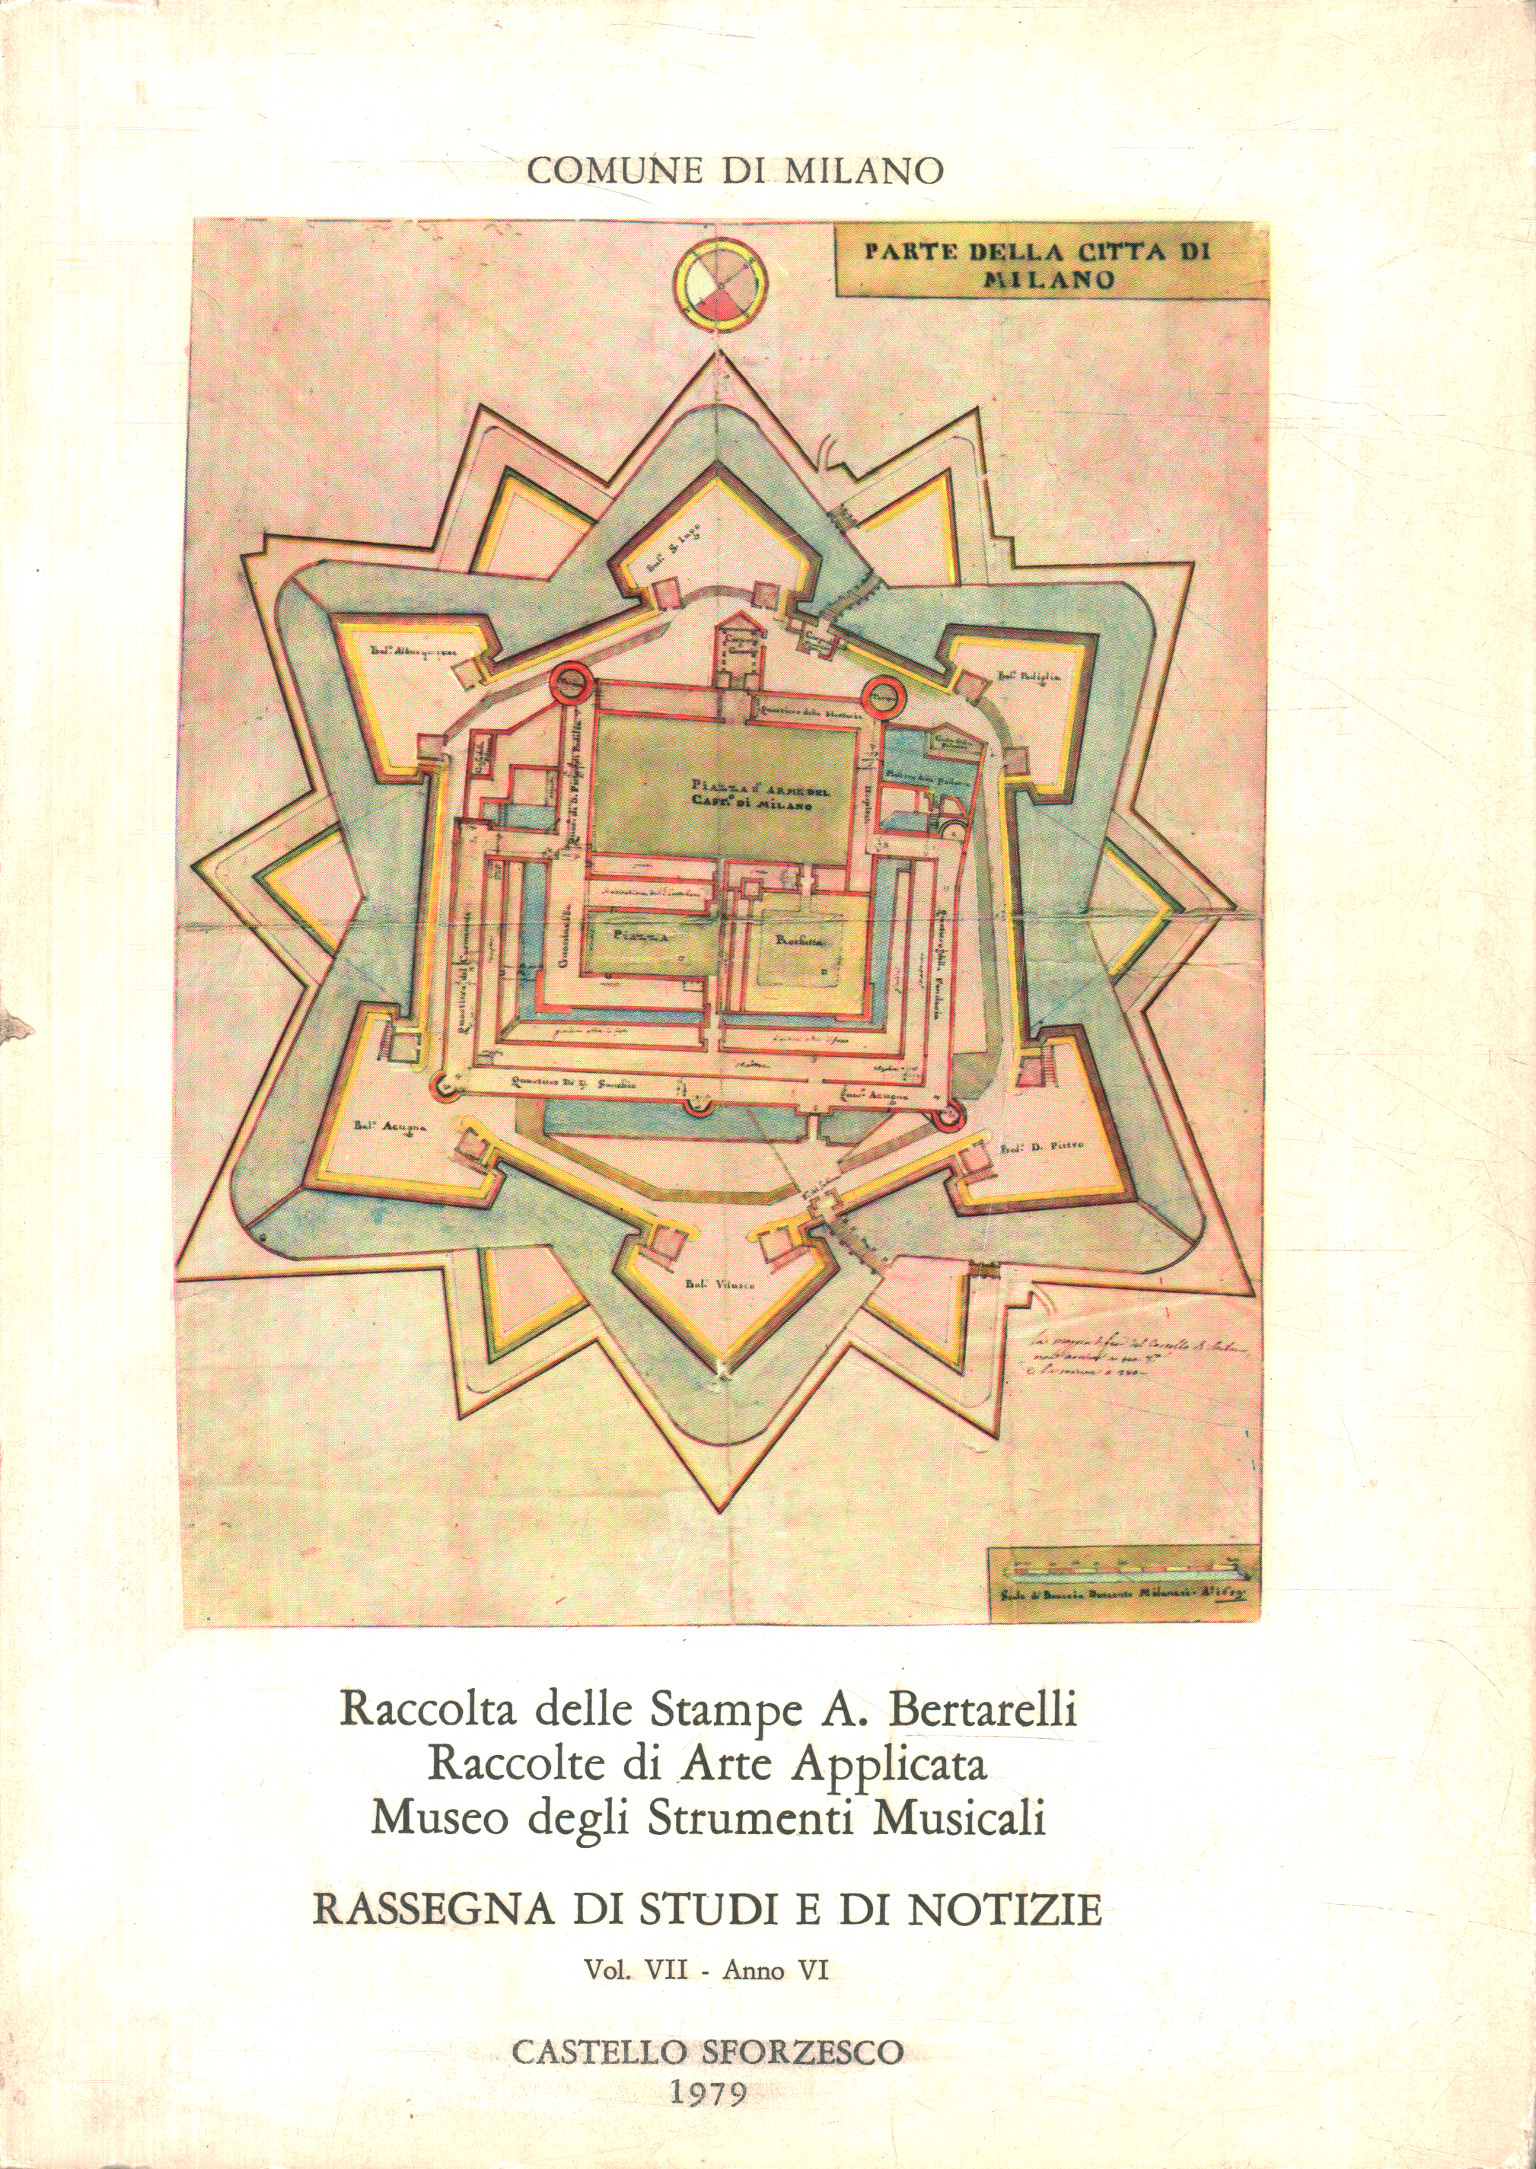 Collection of Prints A. Bertarelli. Rac, Review of studies and news. Collection, Review of studies and news (Vol. VII%